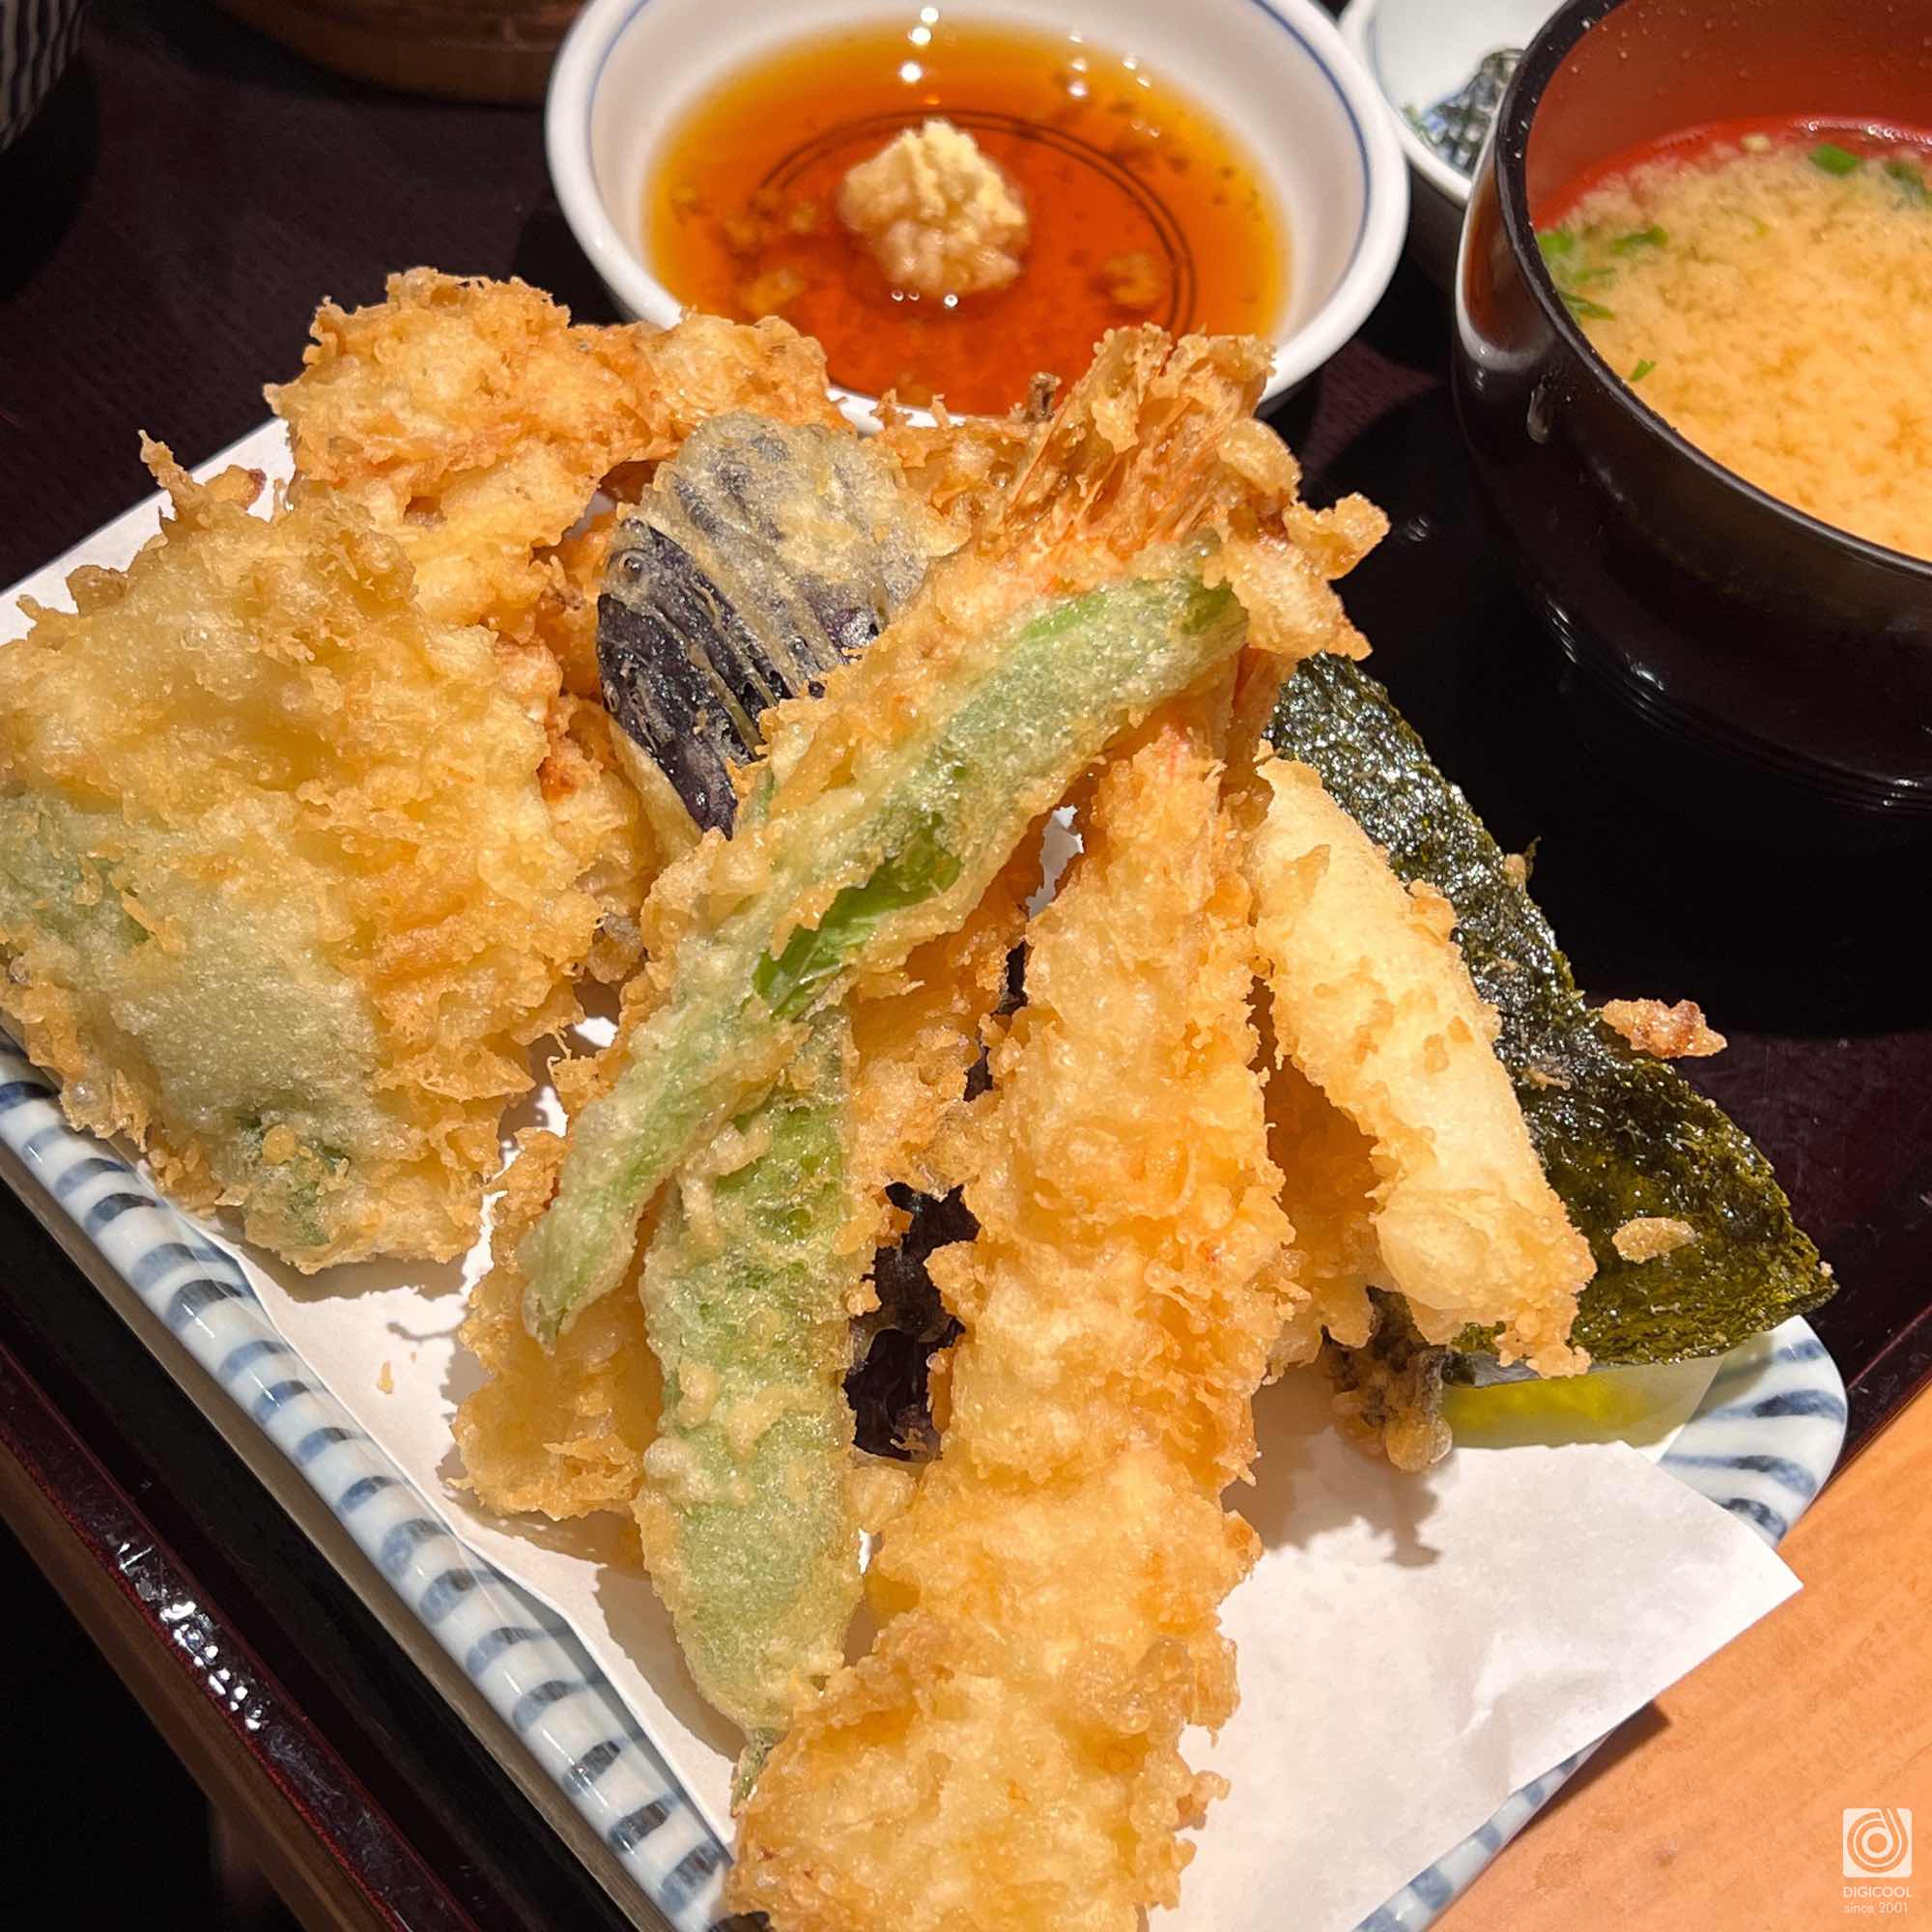 東京都 新宿区・暑い日のランチは「天丼・天まぶし 天吉屋」の天まぶしでガッツリを暑気払いだ！